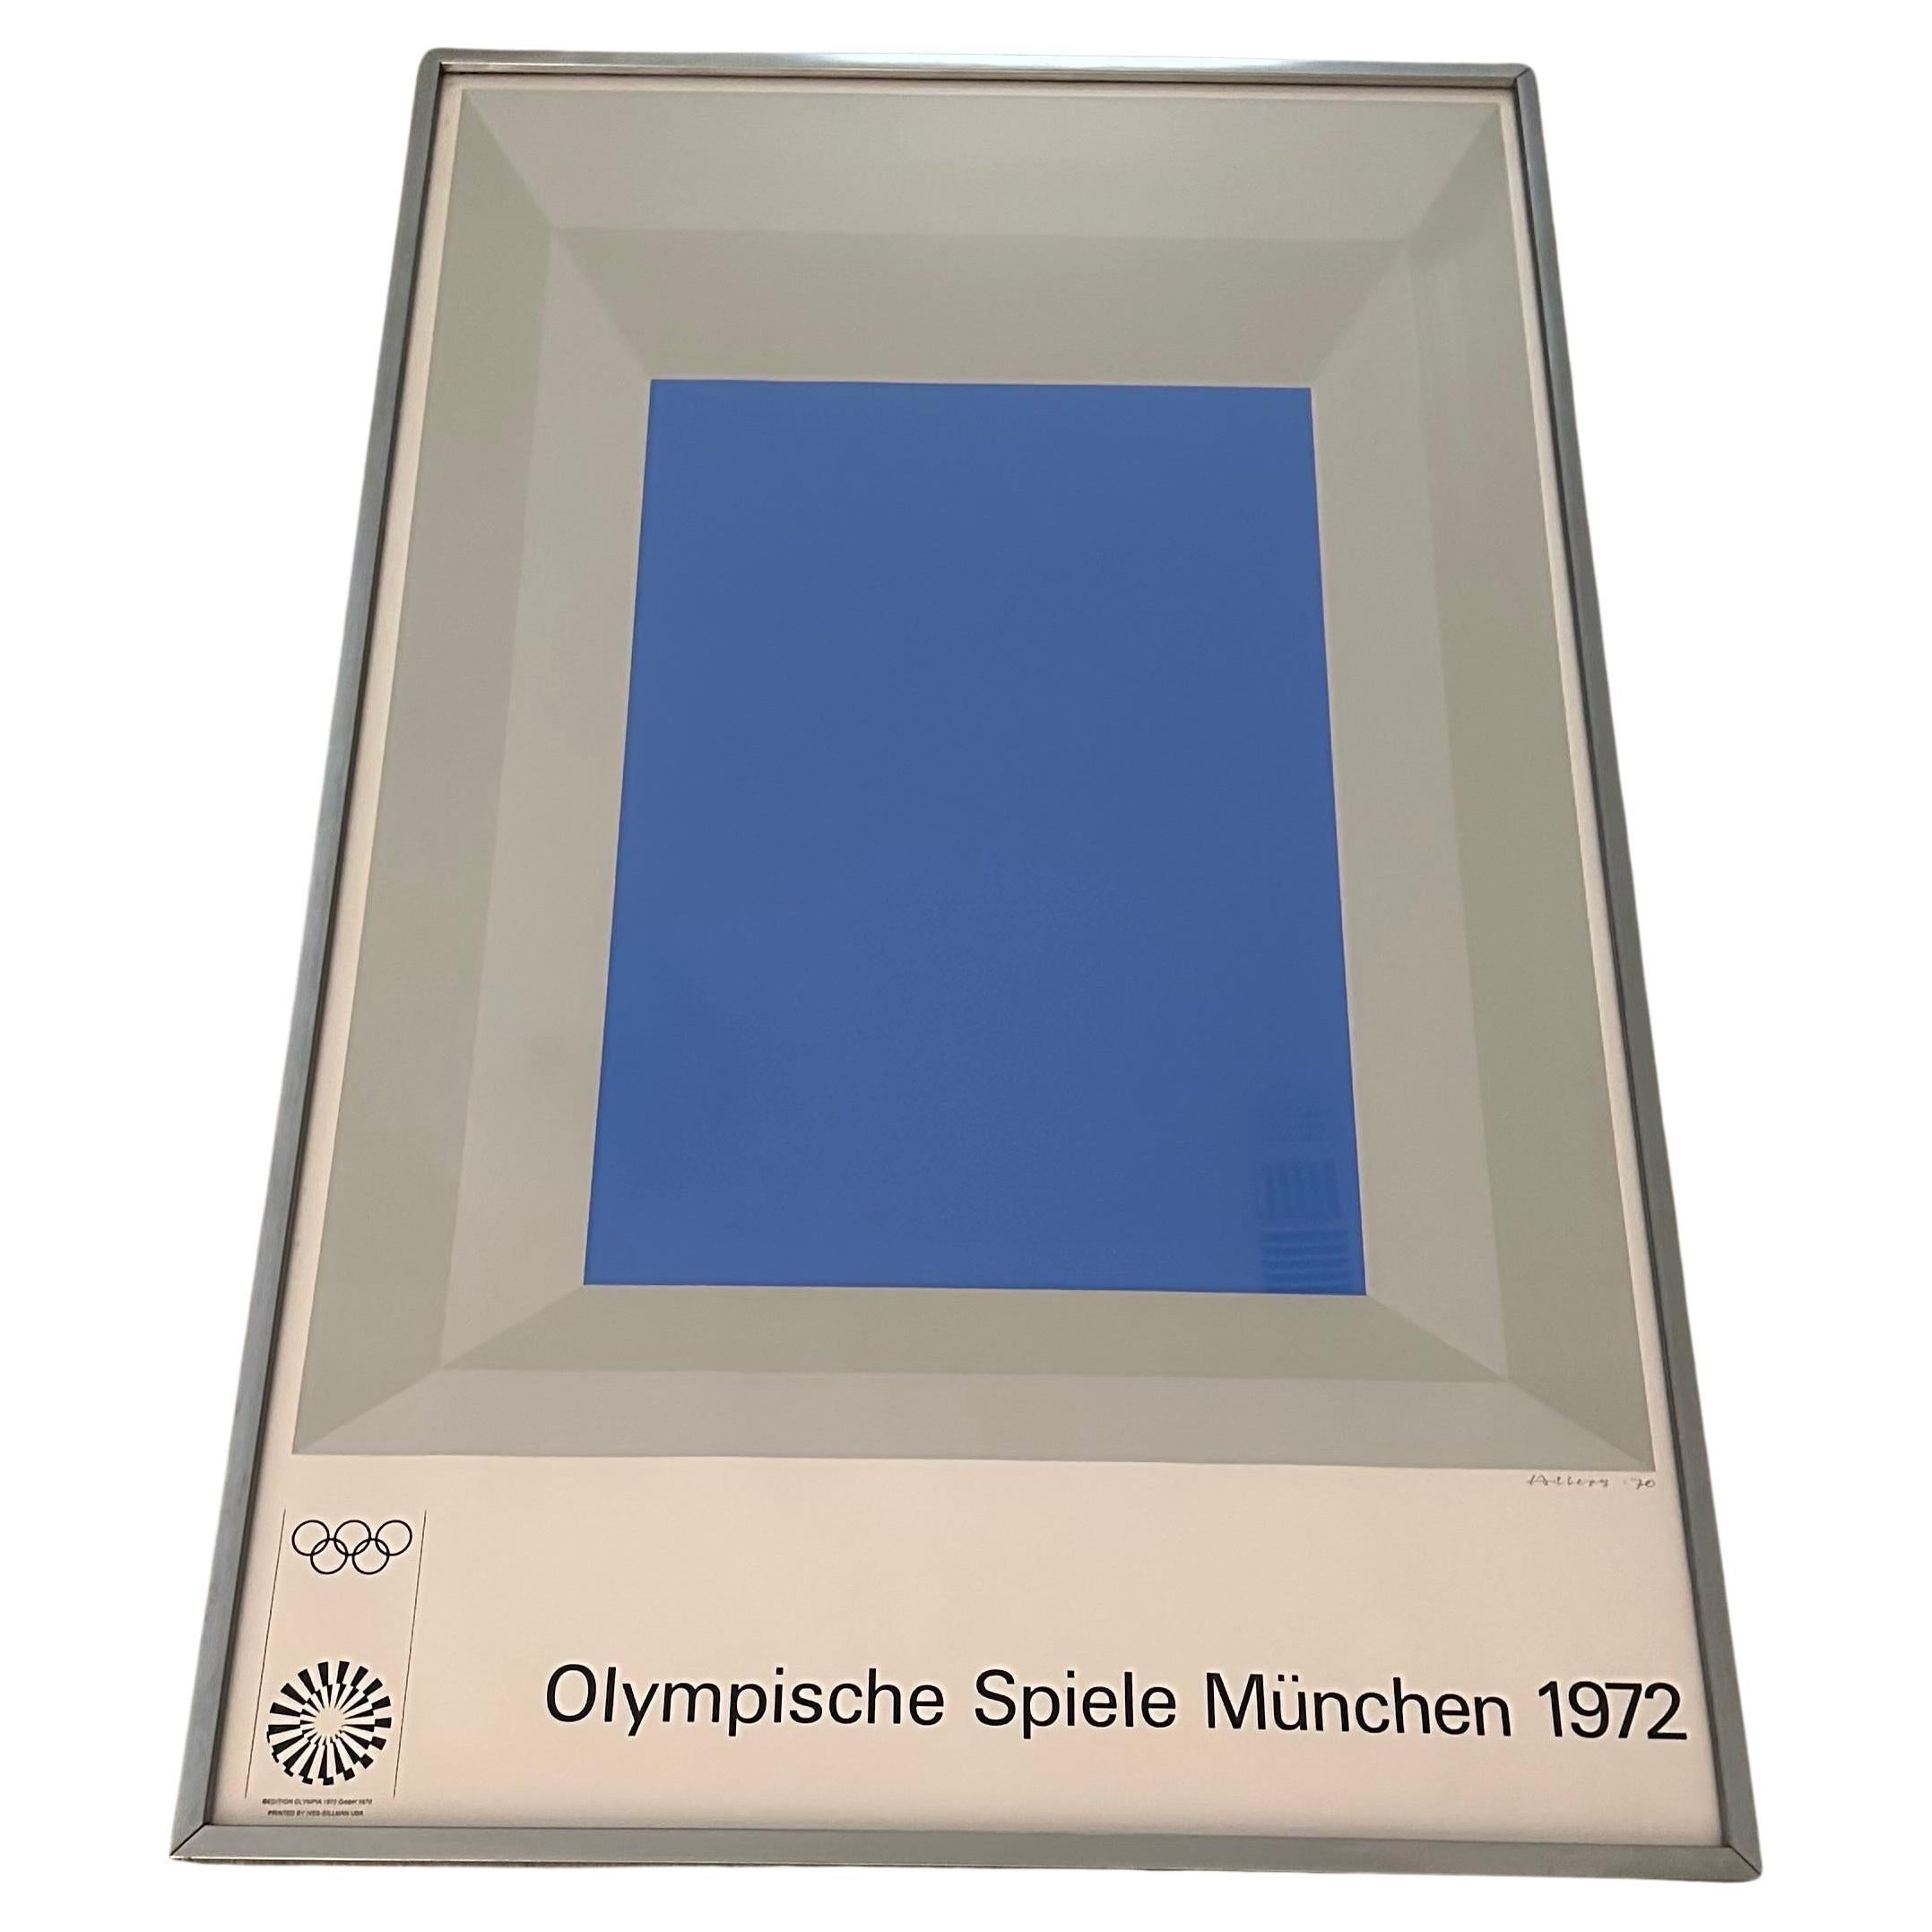 Póster abstracto serigrafiado titulado "Juegos Olímpicos de Múnich 1972" de Josef Albers en venta